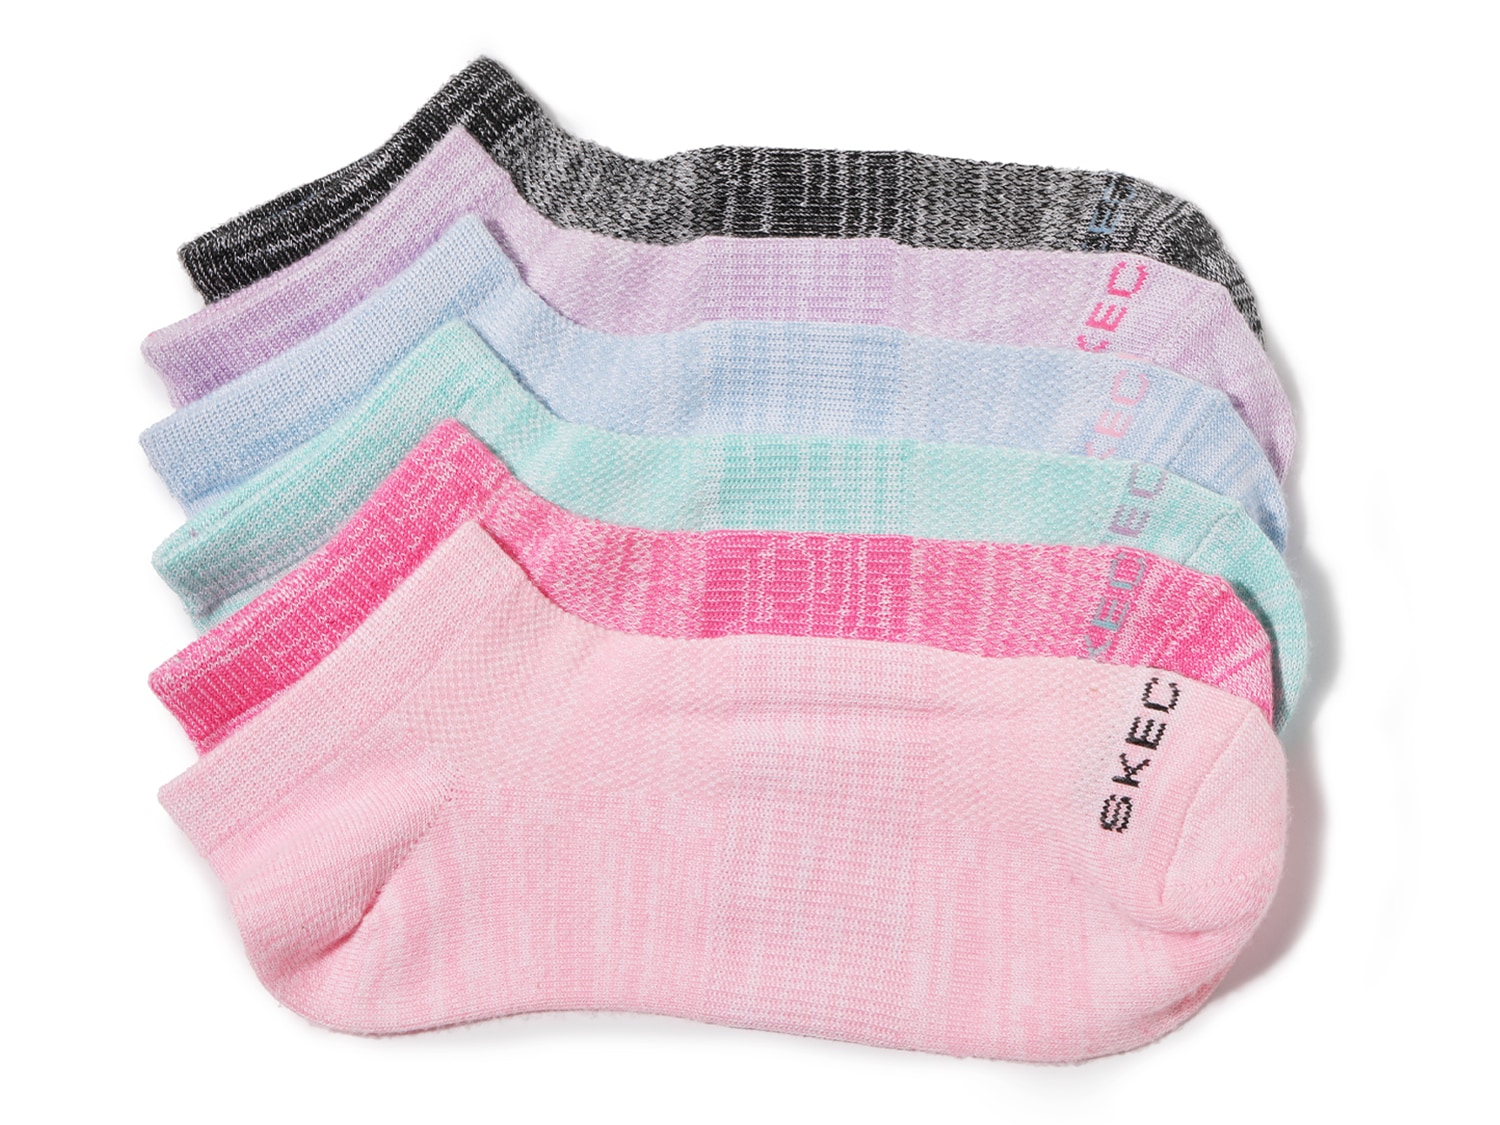 Skechers Marled Women's Low Cut Socks - 6 Pack - Free Shipping | DSW